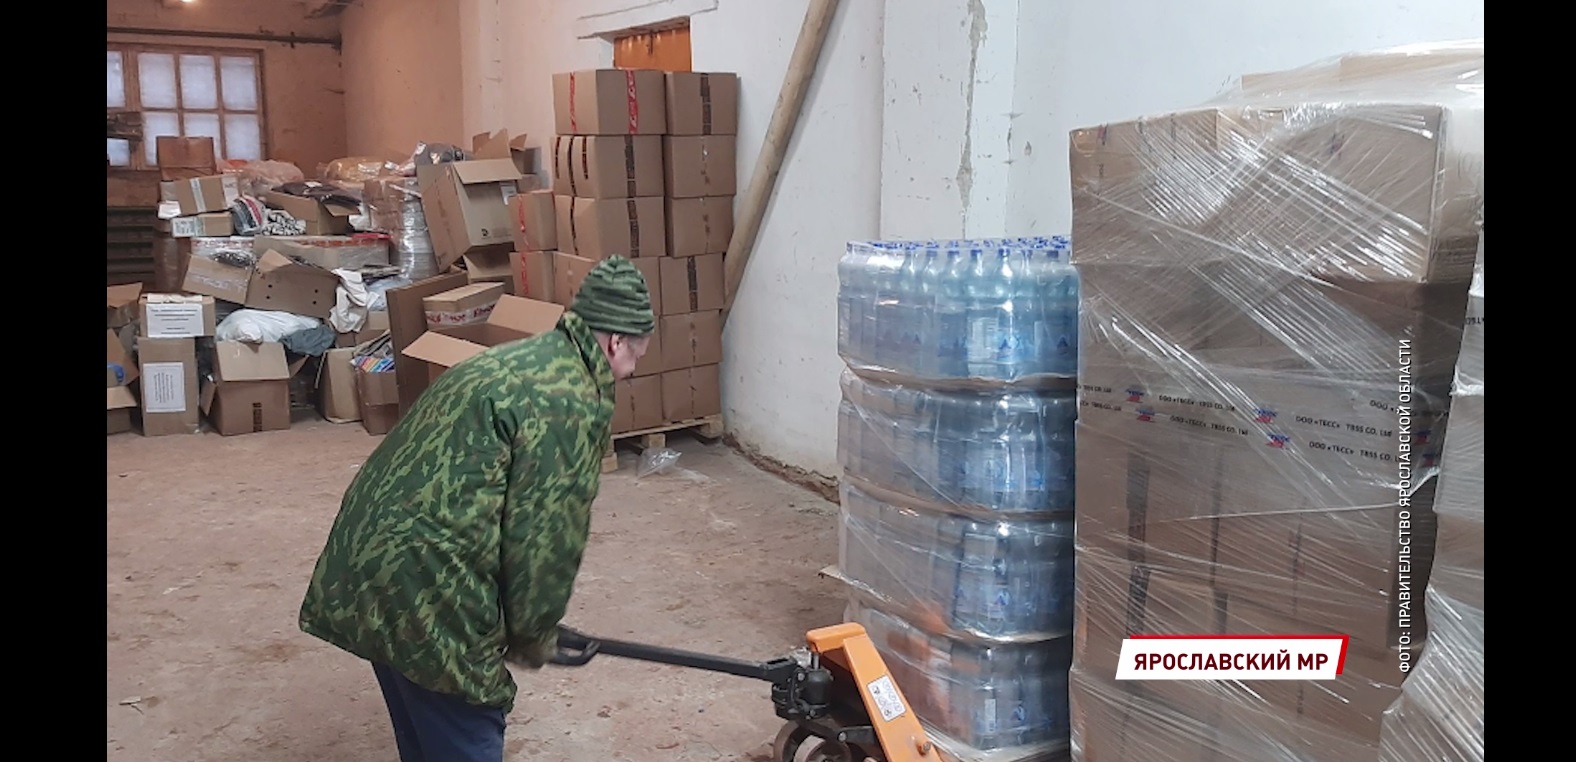 Область отправила очередную партию необходимых вещей для ярославских военнослужащих, которые находятся на учебном полигоне в Нижегородской области